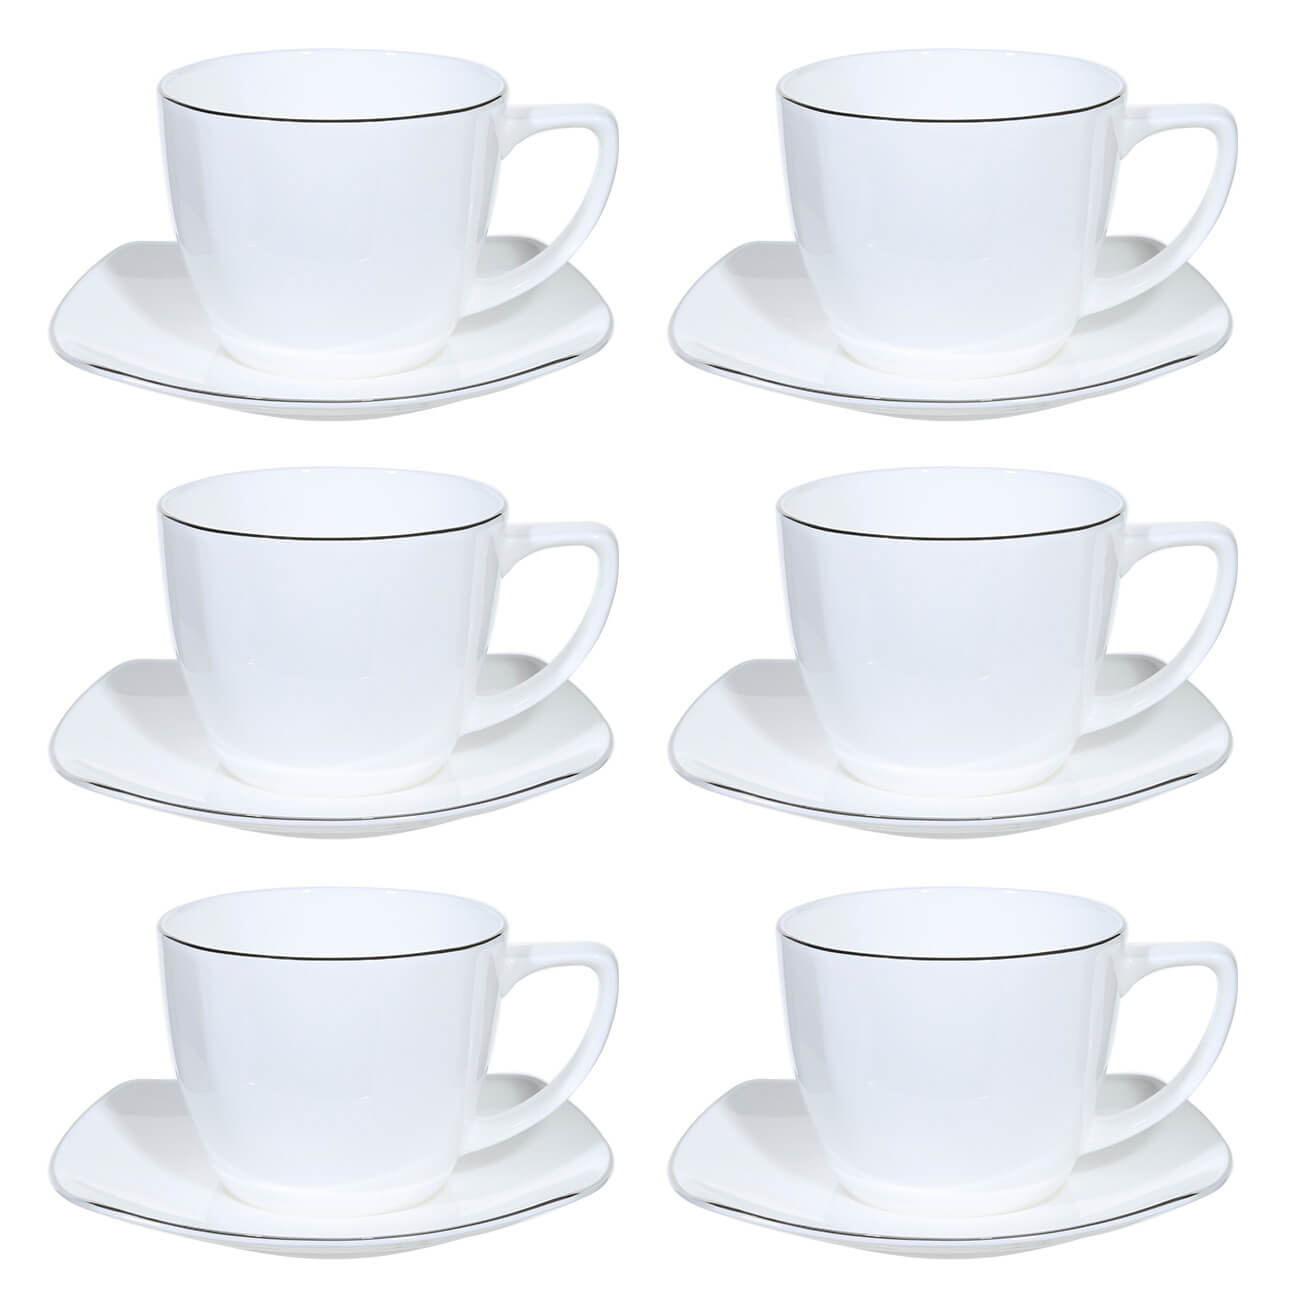 Пара чайная, 6 перс, 12 пр, 240 мл, фарфор F, Iceberg пара кофейная 2 перс 4 пр 110 мл фарфор f antarctica